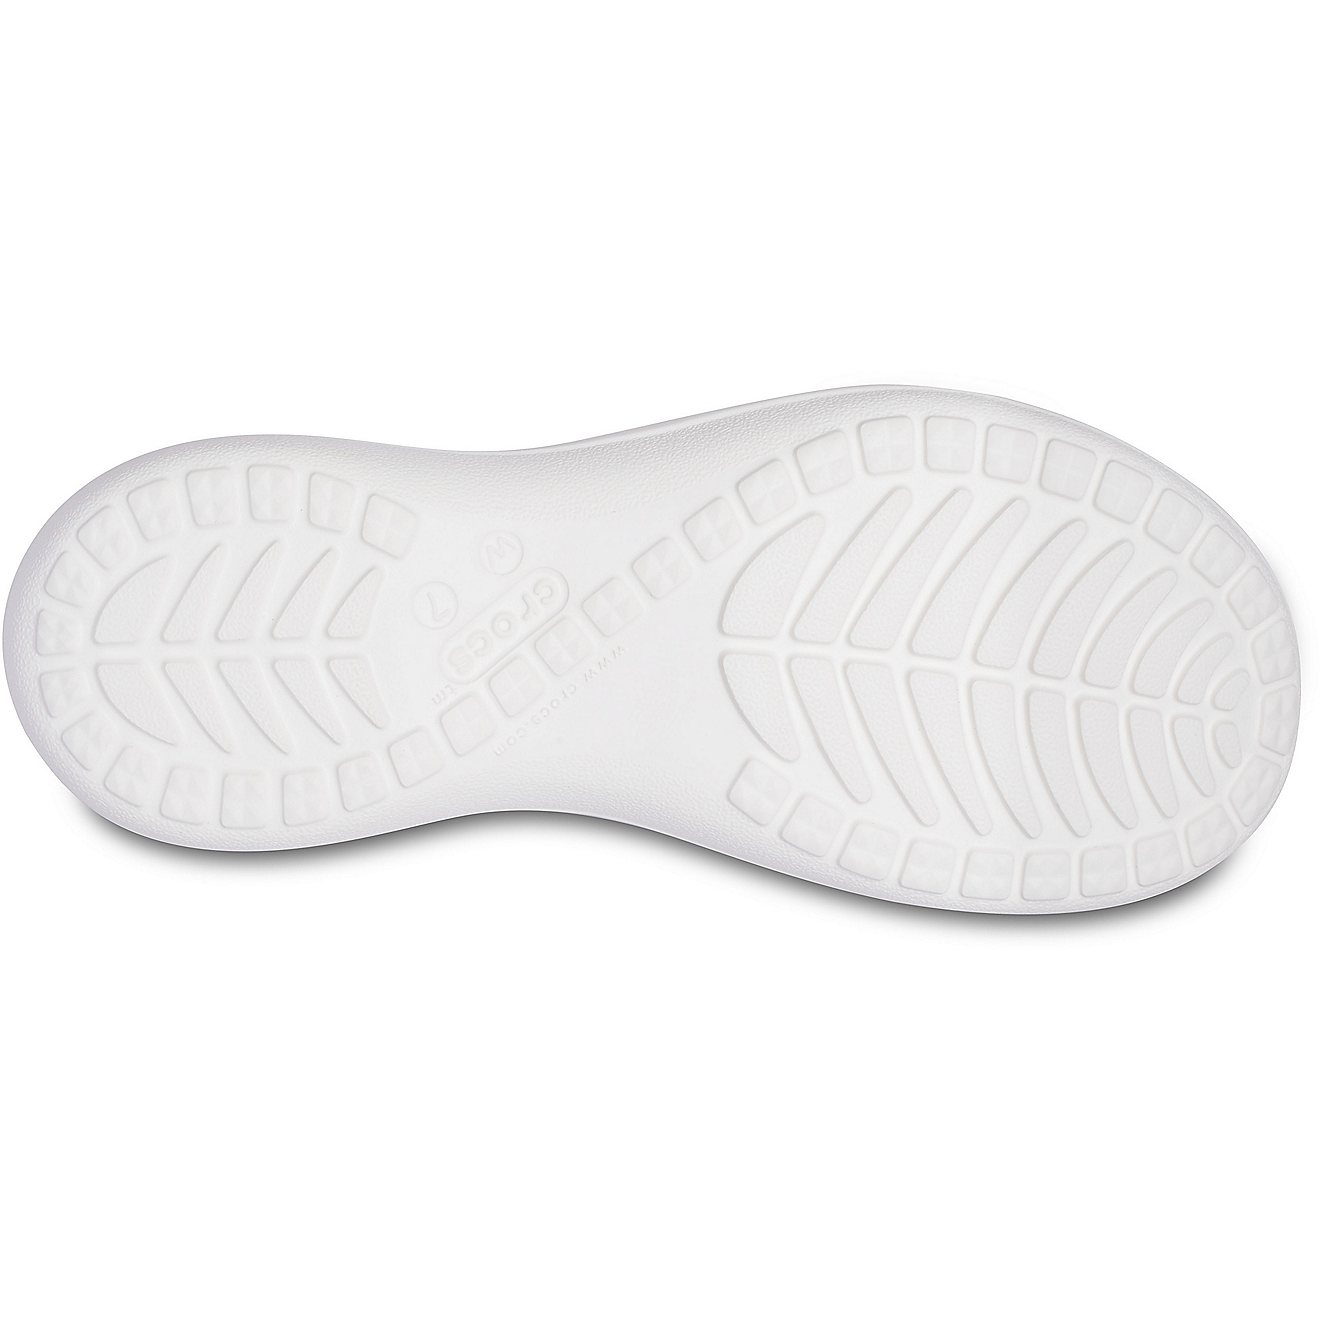 Crocs Women's Capri Sporty Flip Flop Sandals                                                                                     - view number 4